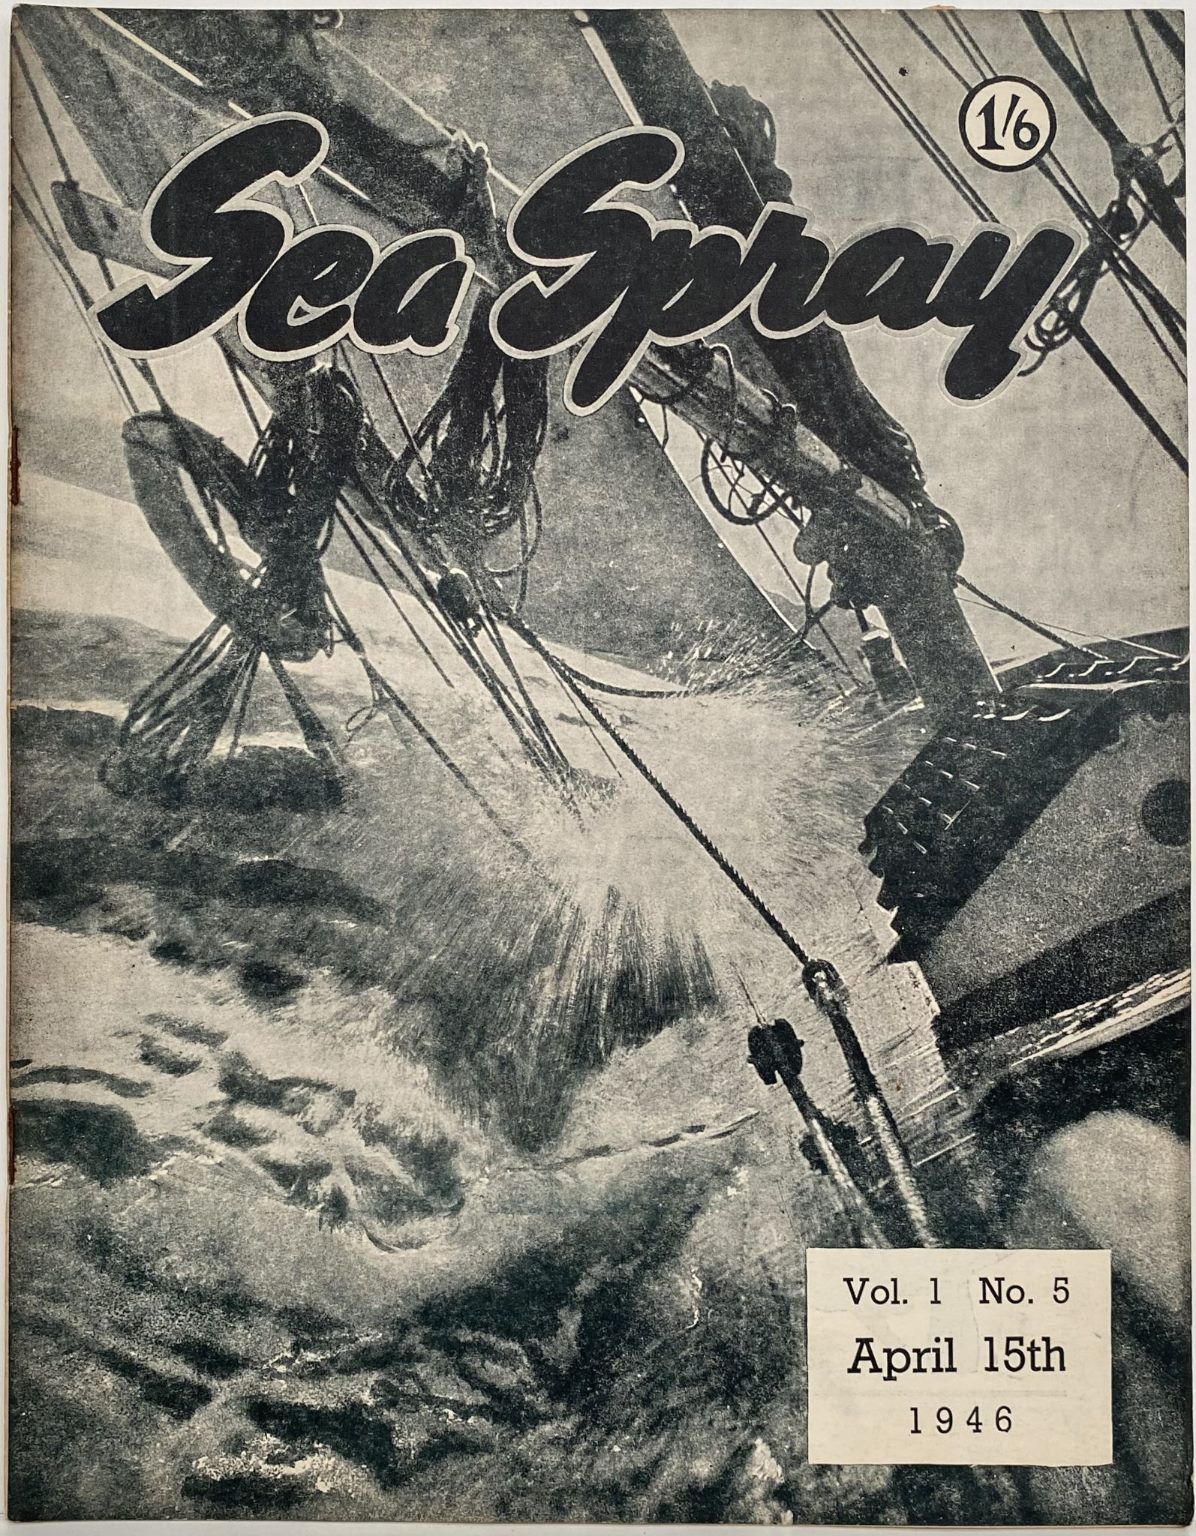 VINTAGE MAGAZINE: Sea Spray - Vol. 1, No. 5 - April 1946